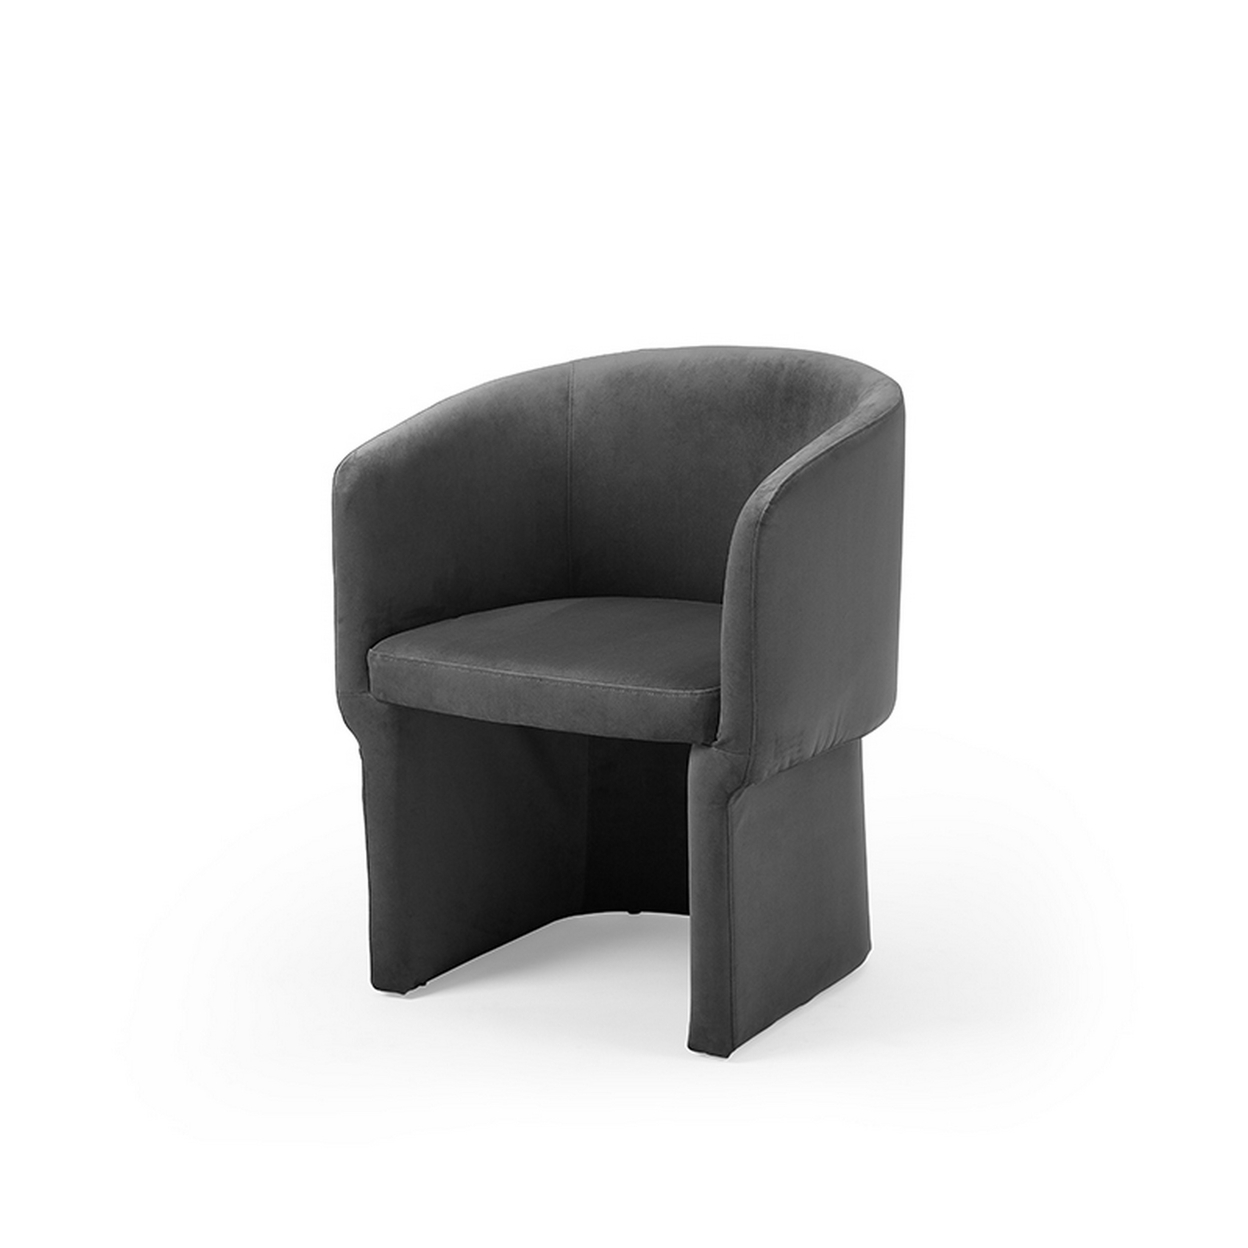 26 Inch Modern Dining Chair, Dark Gray Velvet Fabric, Curved Backrest - Saltoro Sherpi